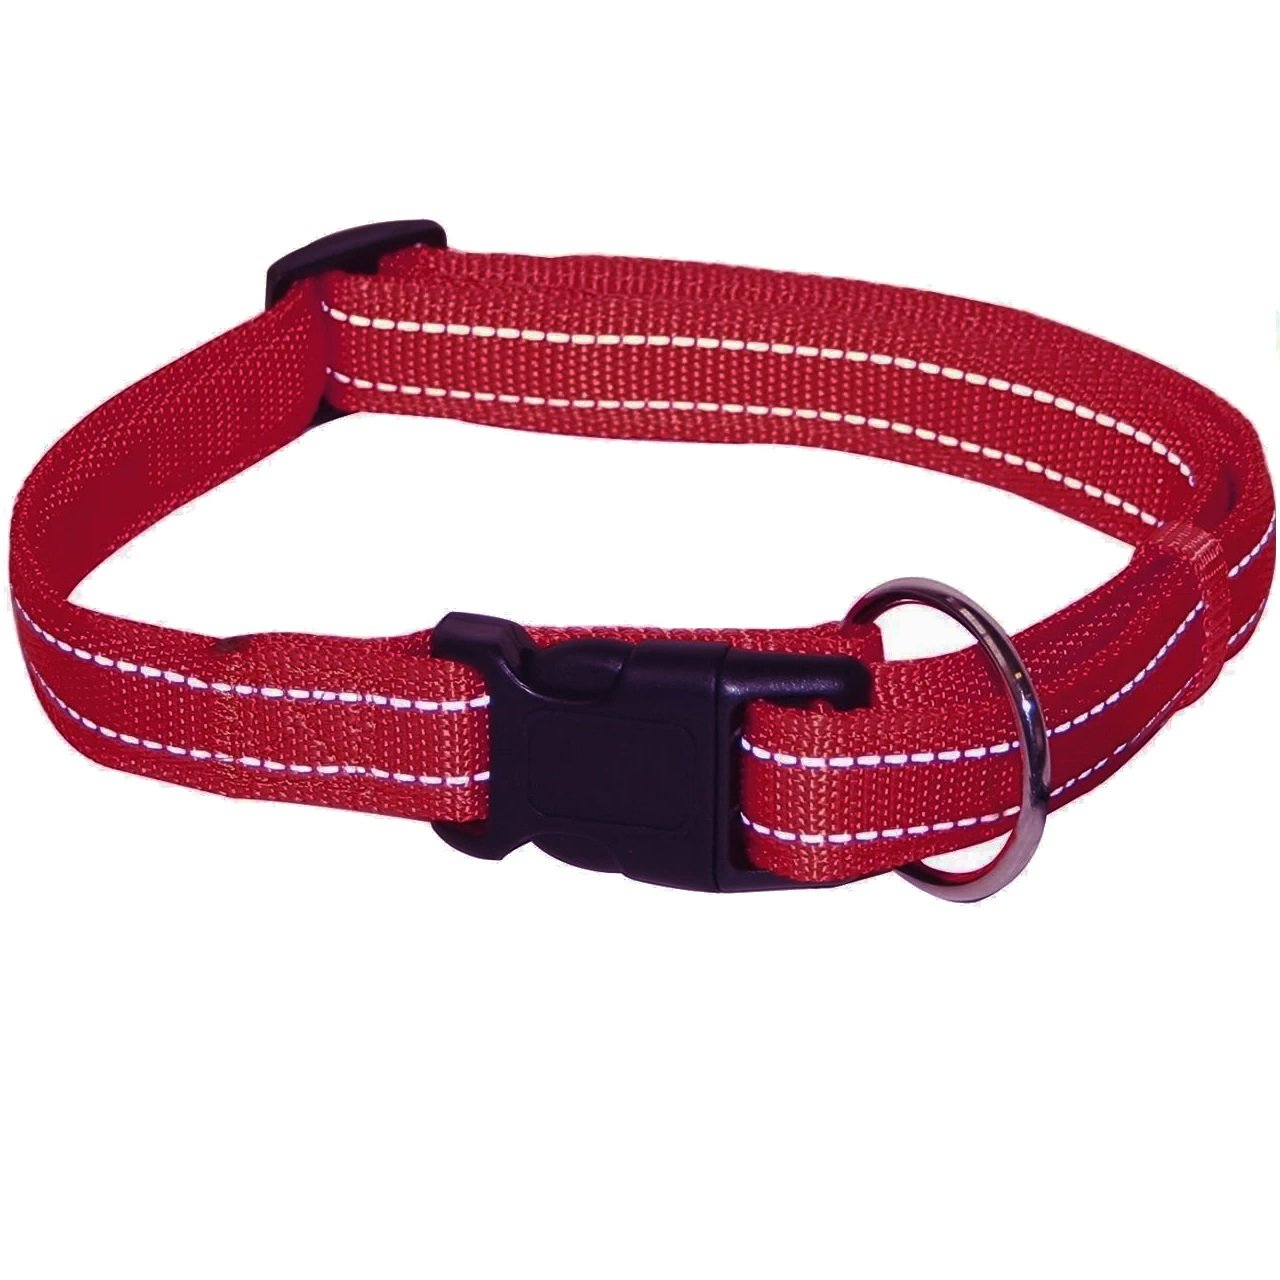 Ошейник для собак Croci Soft Reflective светоотражающий, 30-45х1,5 см, бордовый (C5179738) - фото 1